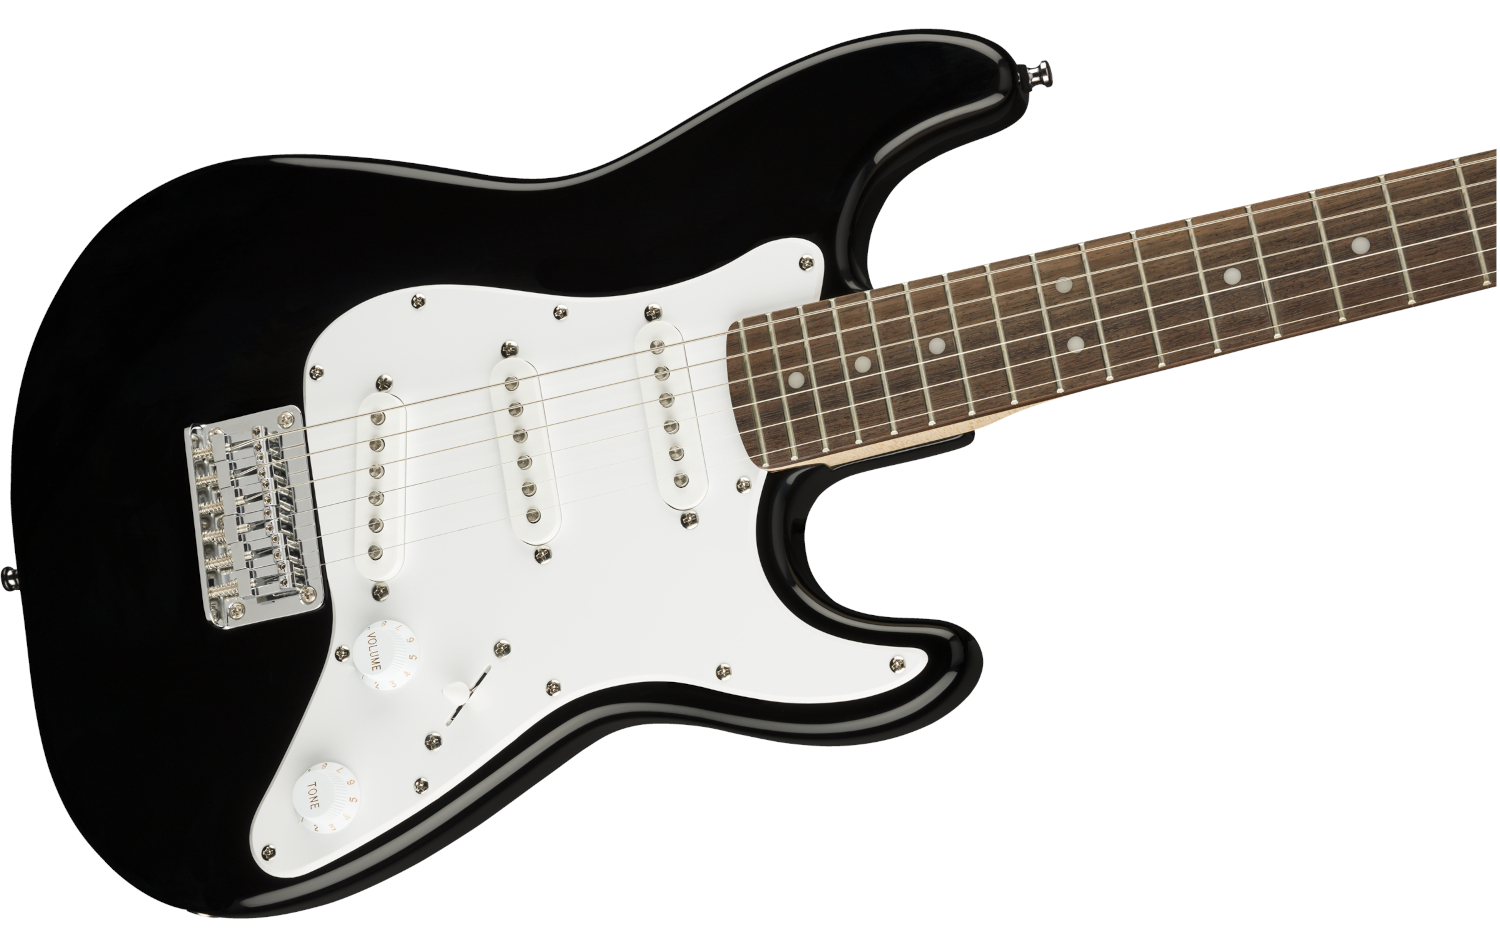 Squier Mini Stratocaster Guitar